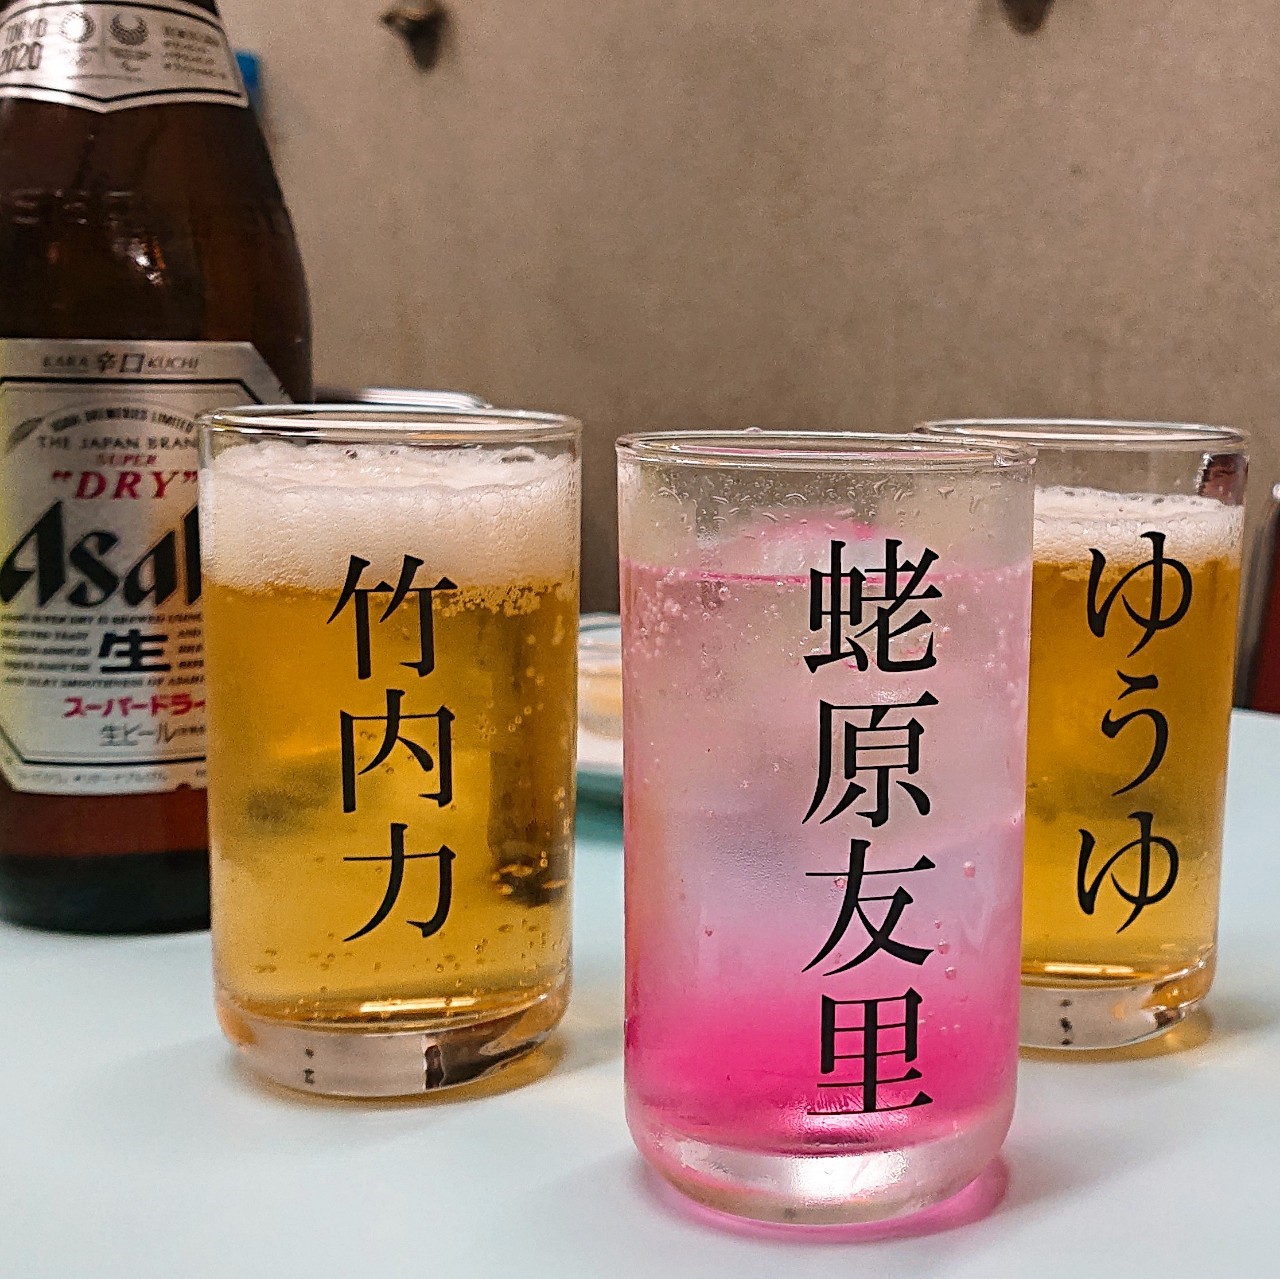 夷川餃子 なかじま 京都 芸能人の名前が書かれたグラスがキュート レトロな個性派餃子屋さん